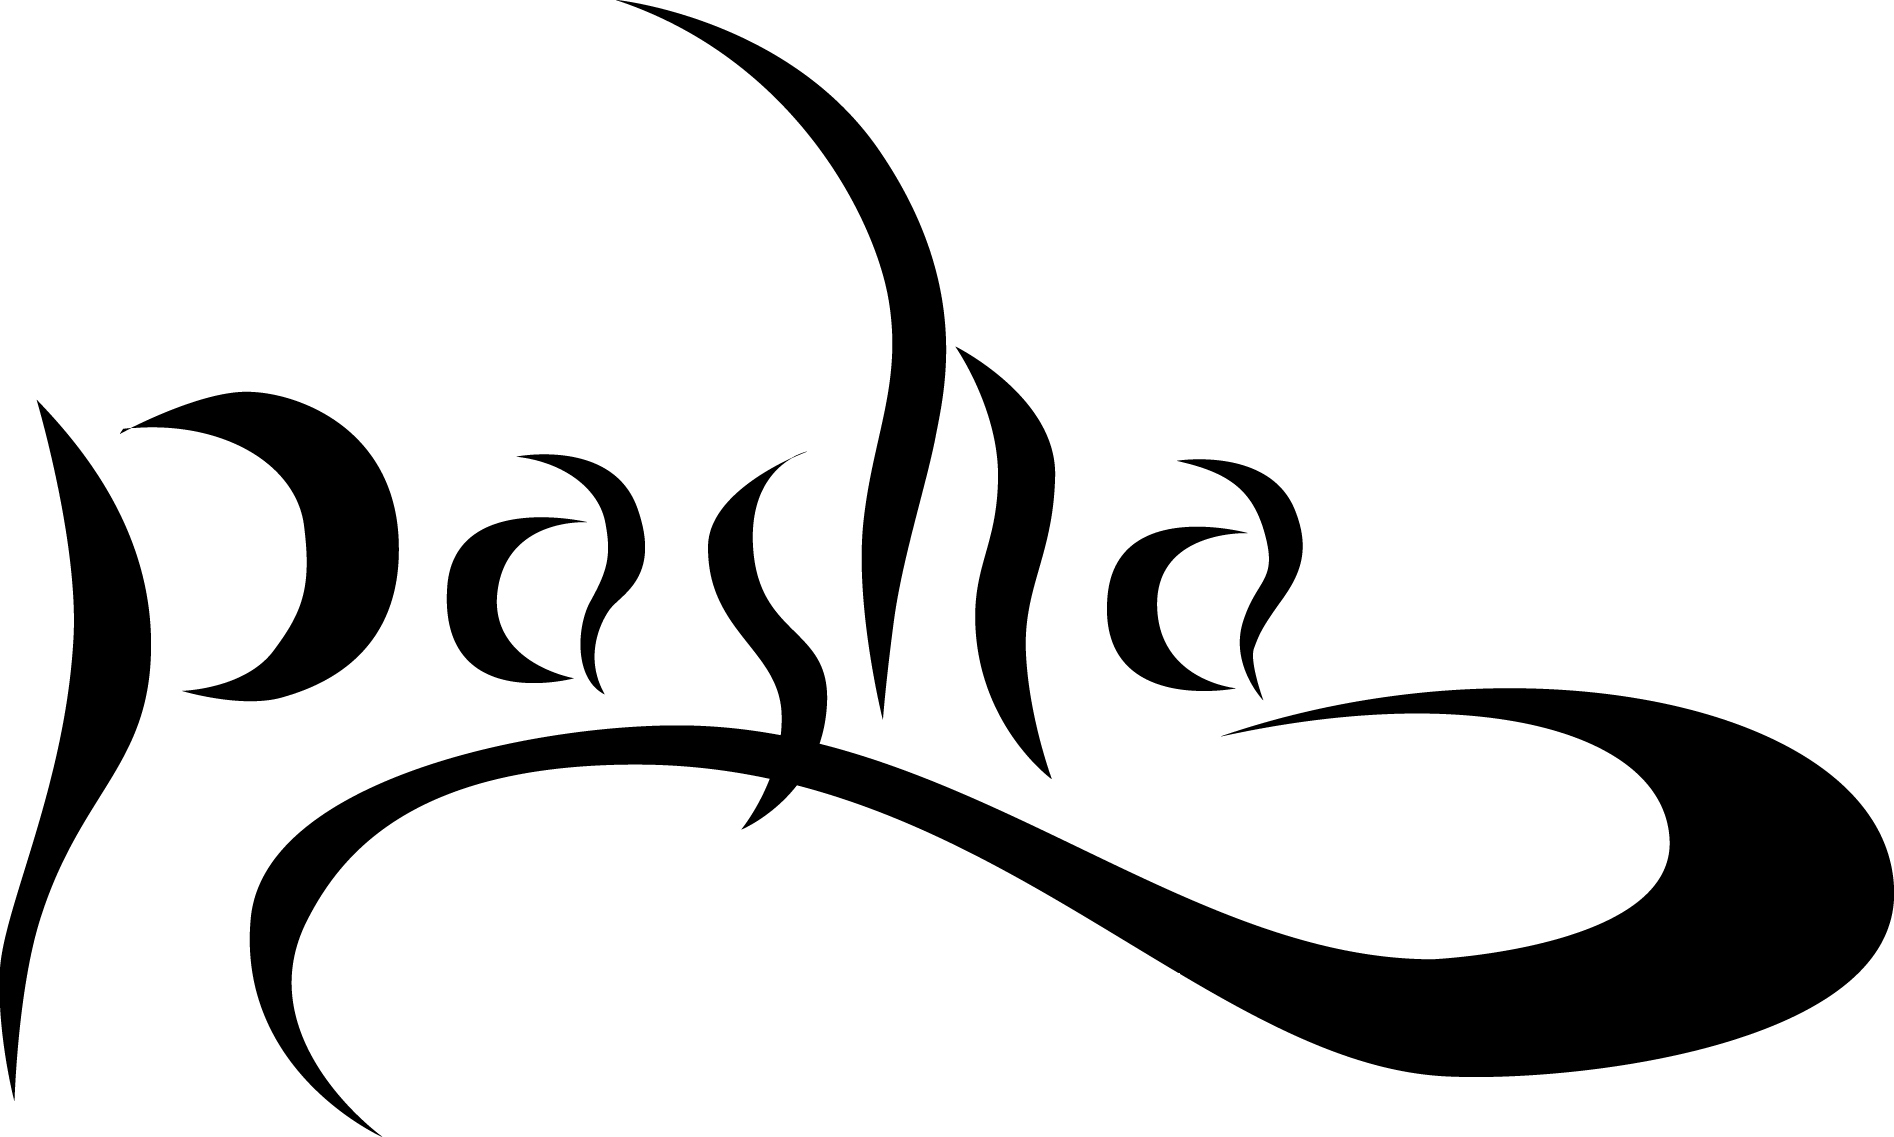 pasha logos | Dangerous Design